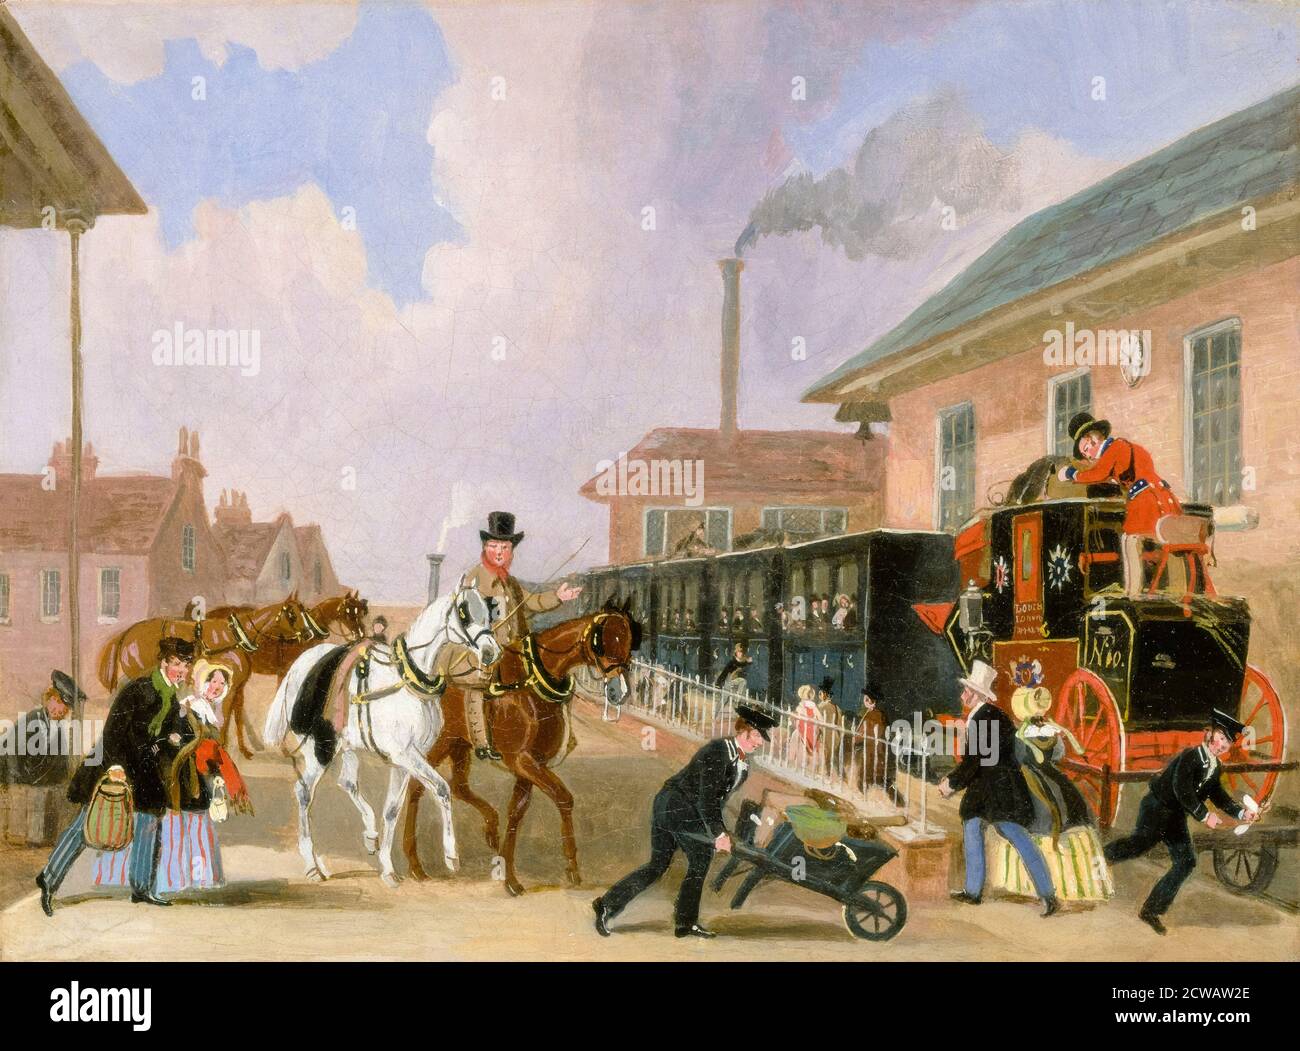 The Louth-London Royal Mail Reisen mit dem Zug von Peterborough East, Northamptonshire, Gemälde von James Pollard, 1845 Stockfoto